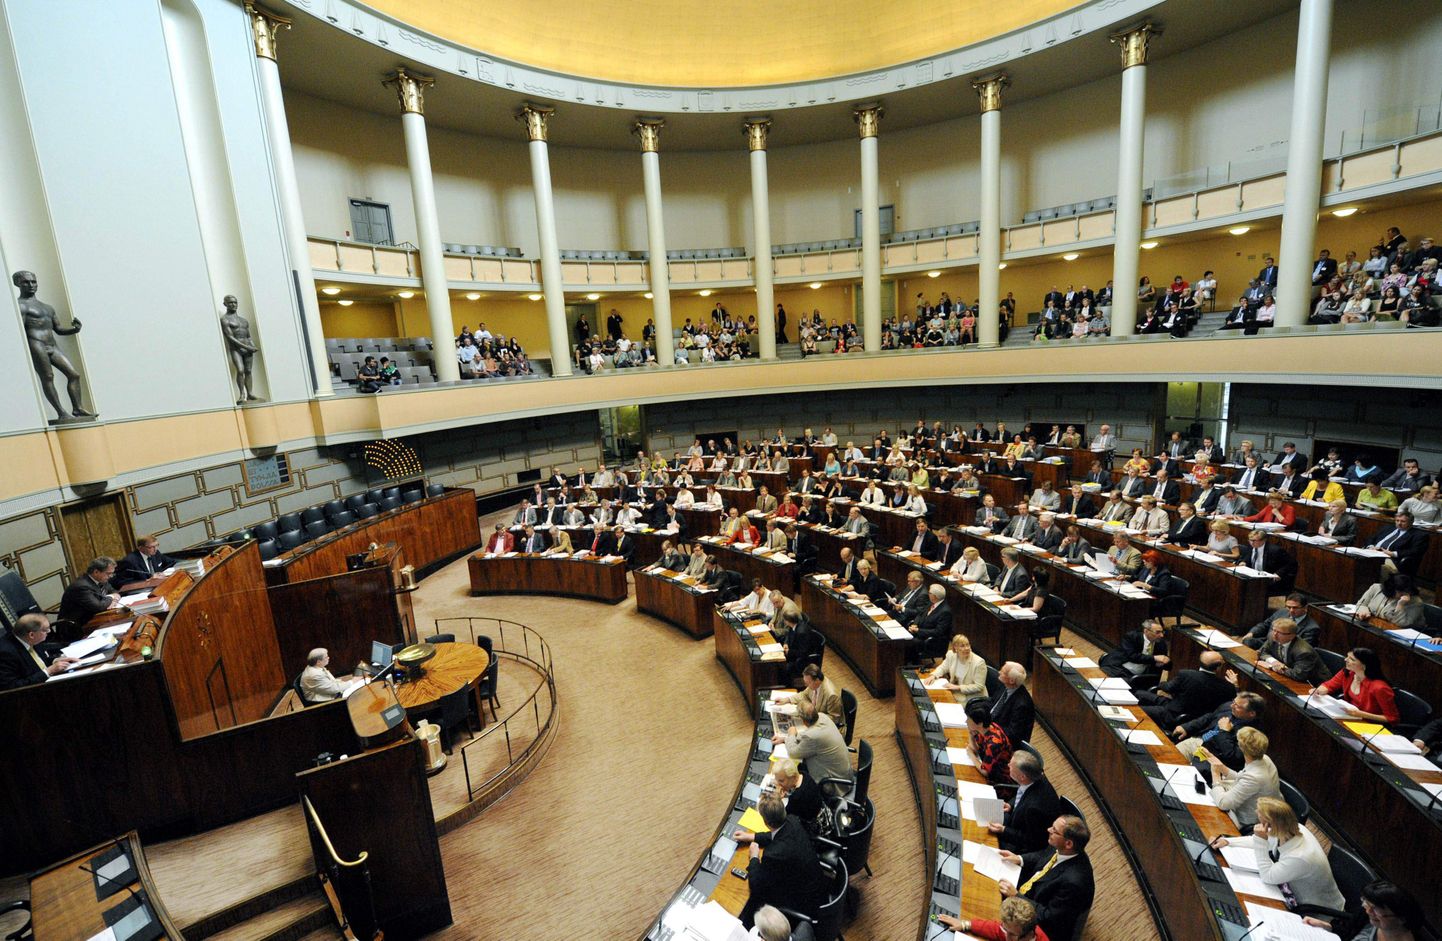 Vaade Soome parlamendi istungitesaali